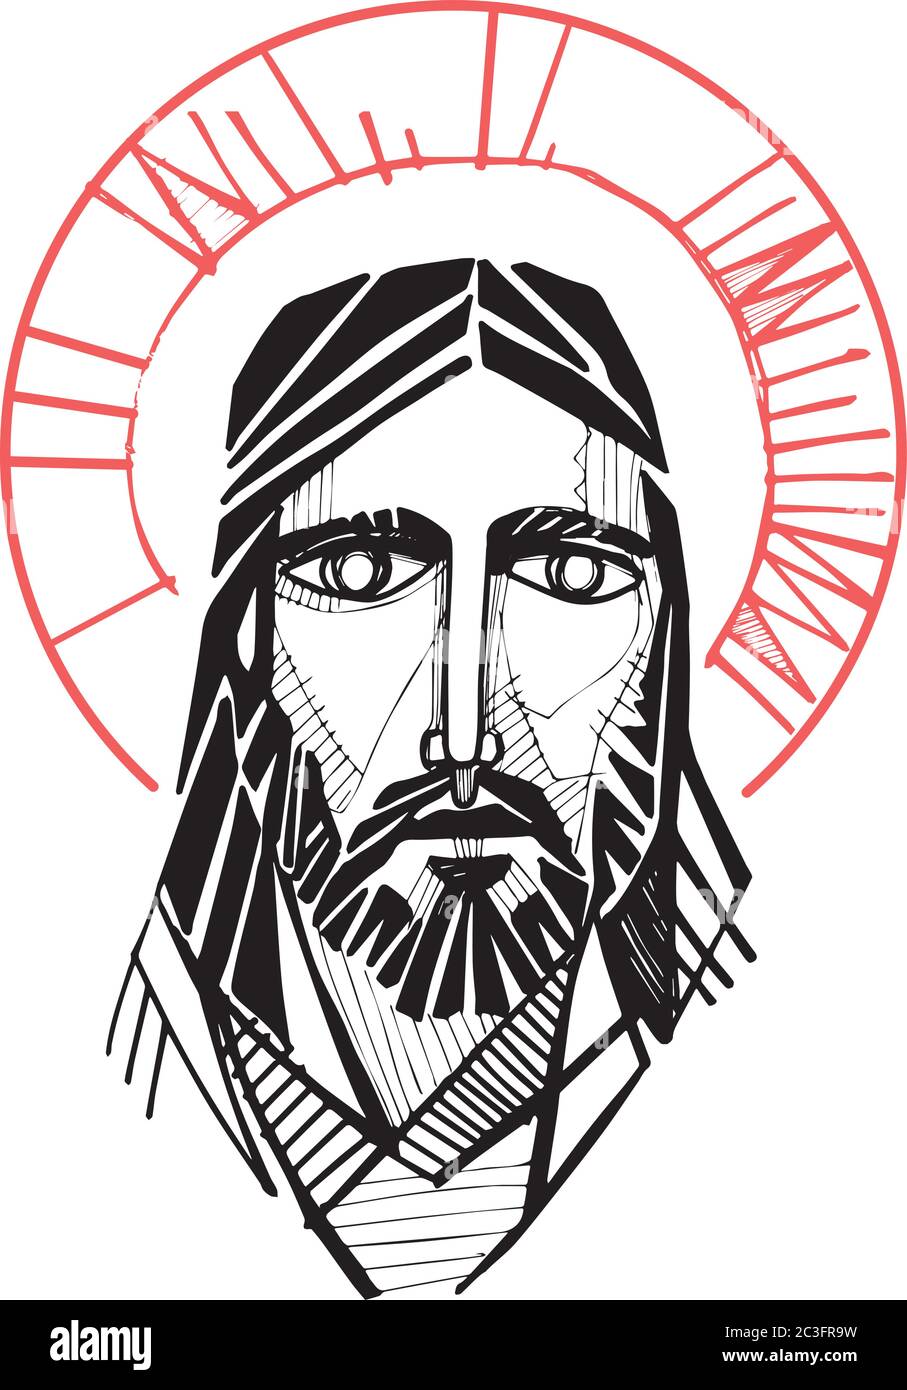 Handgezeichnete Vektorgrafik oder künstlerische Zeichnung von Jesus Christus Gesicht Stock Vektor